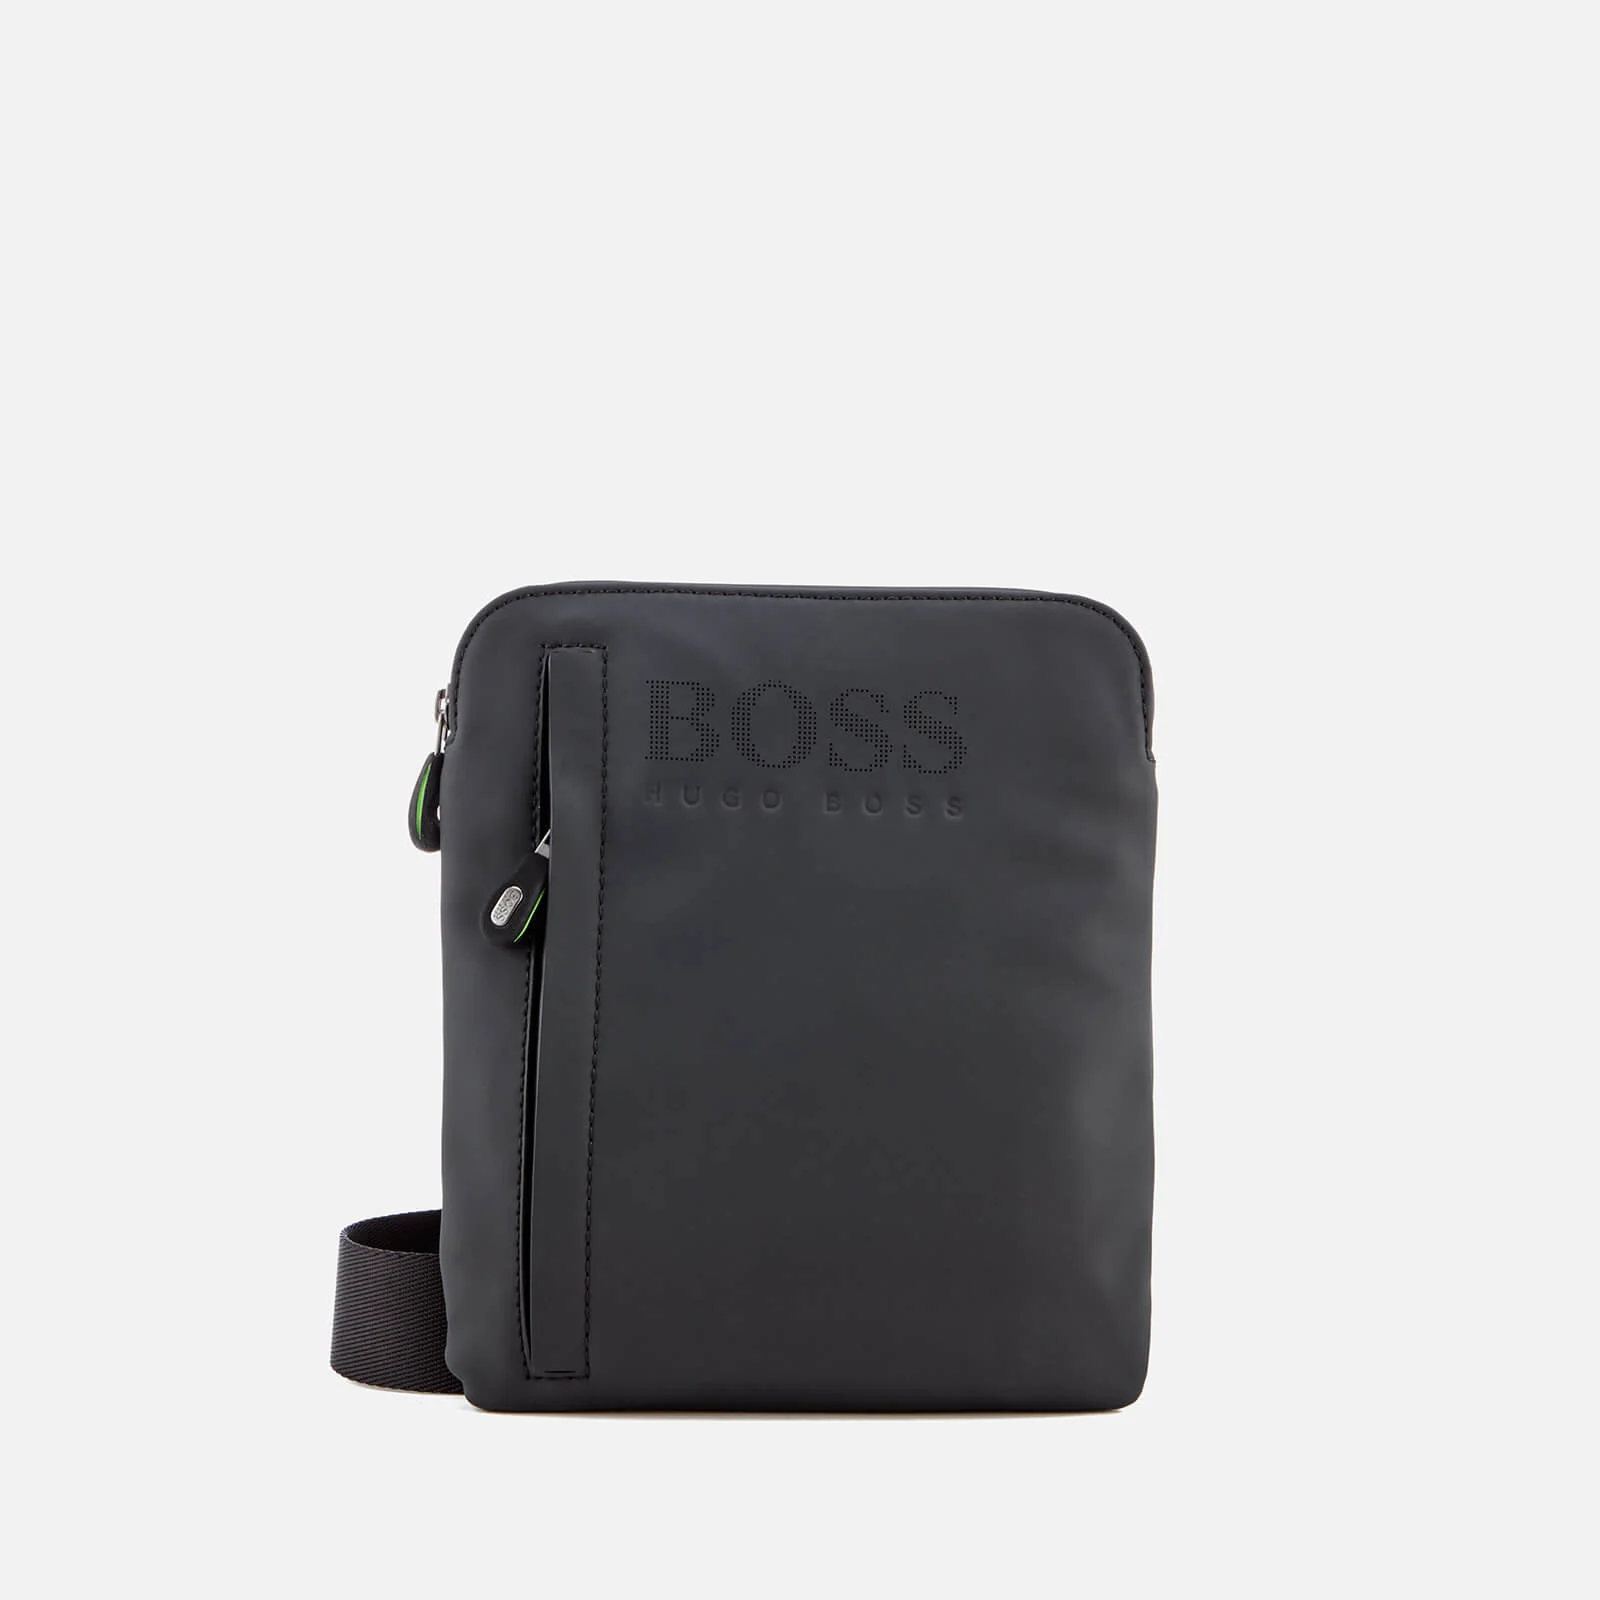 BOSS Hugo Boss Men's Hyper Rubberised Envelope Bag - Black Image 1